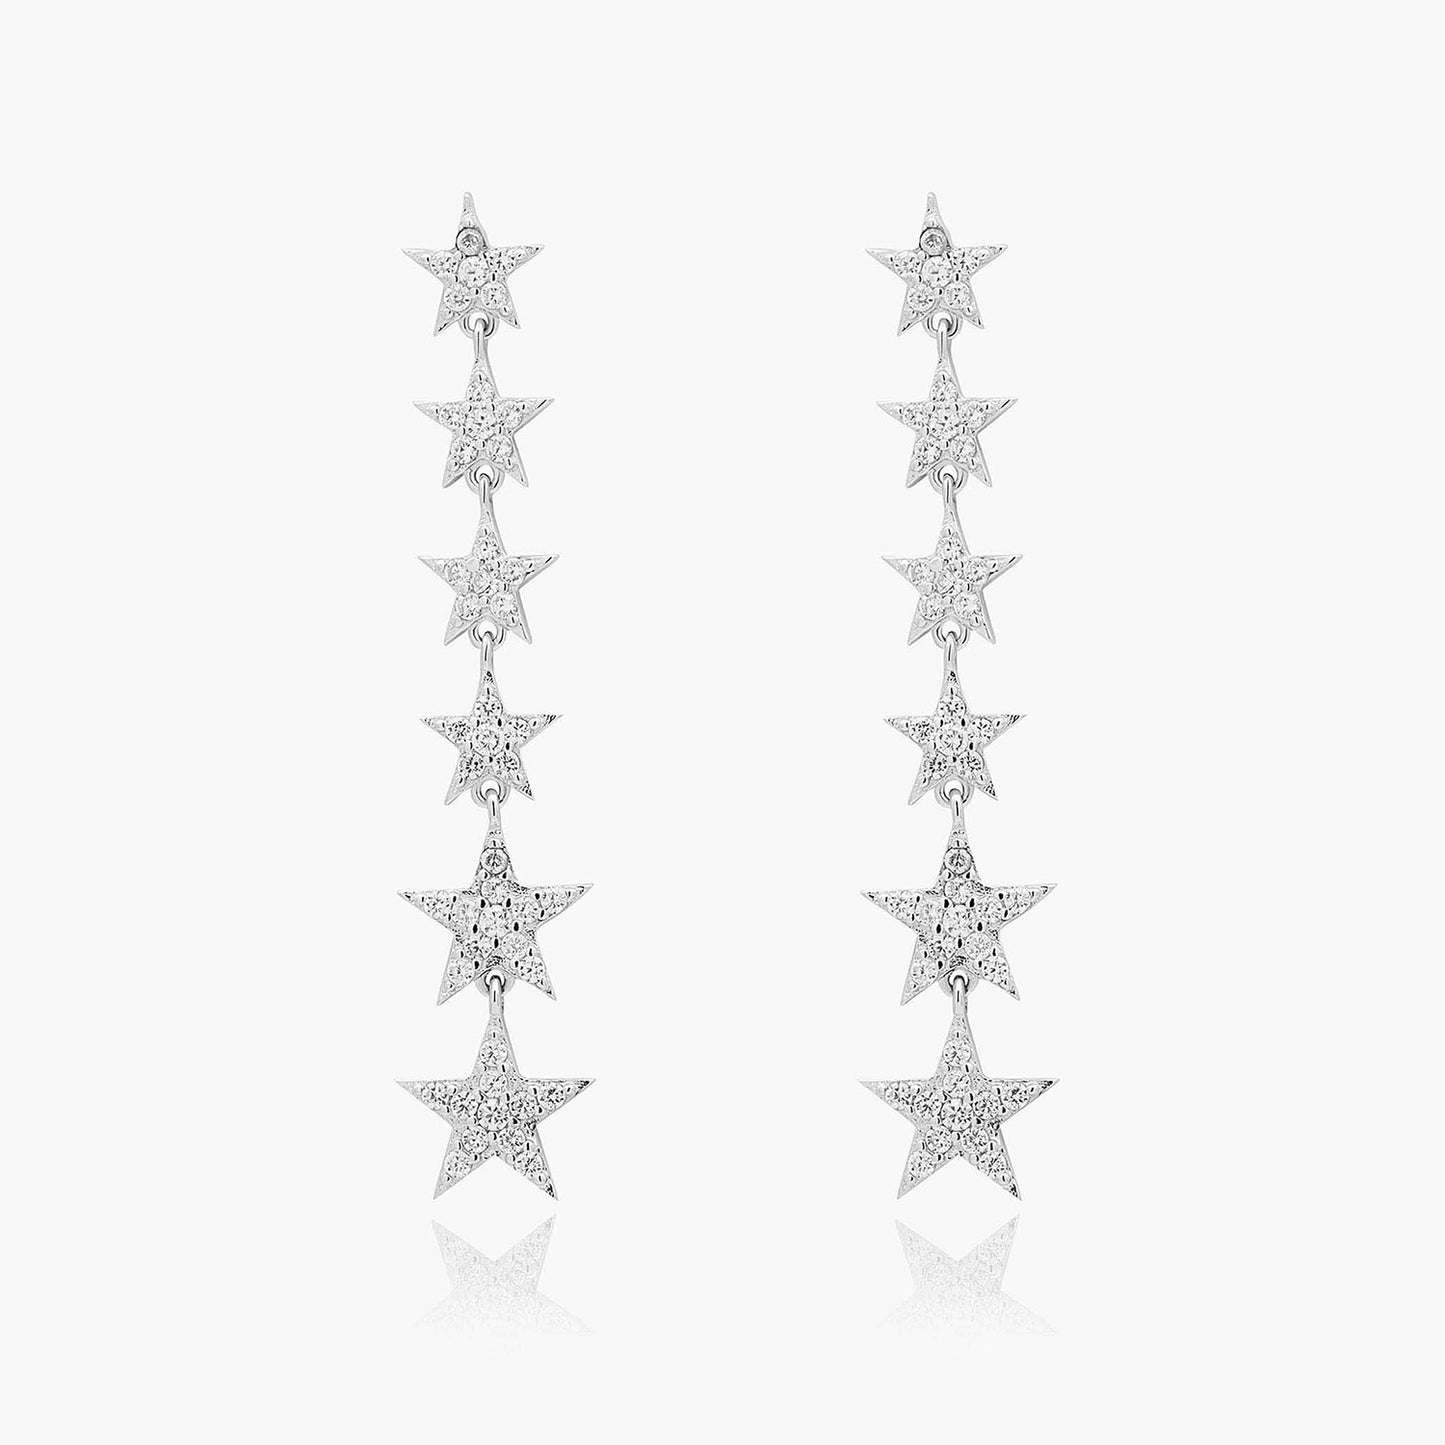 Playa Luna Jewelry Sterling Silver Star Drop Earrings Nova